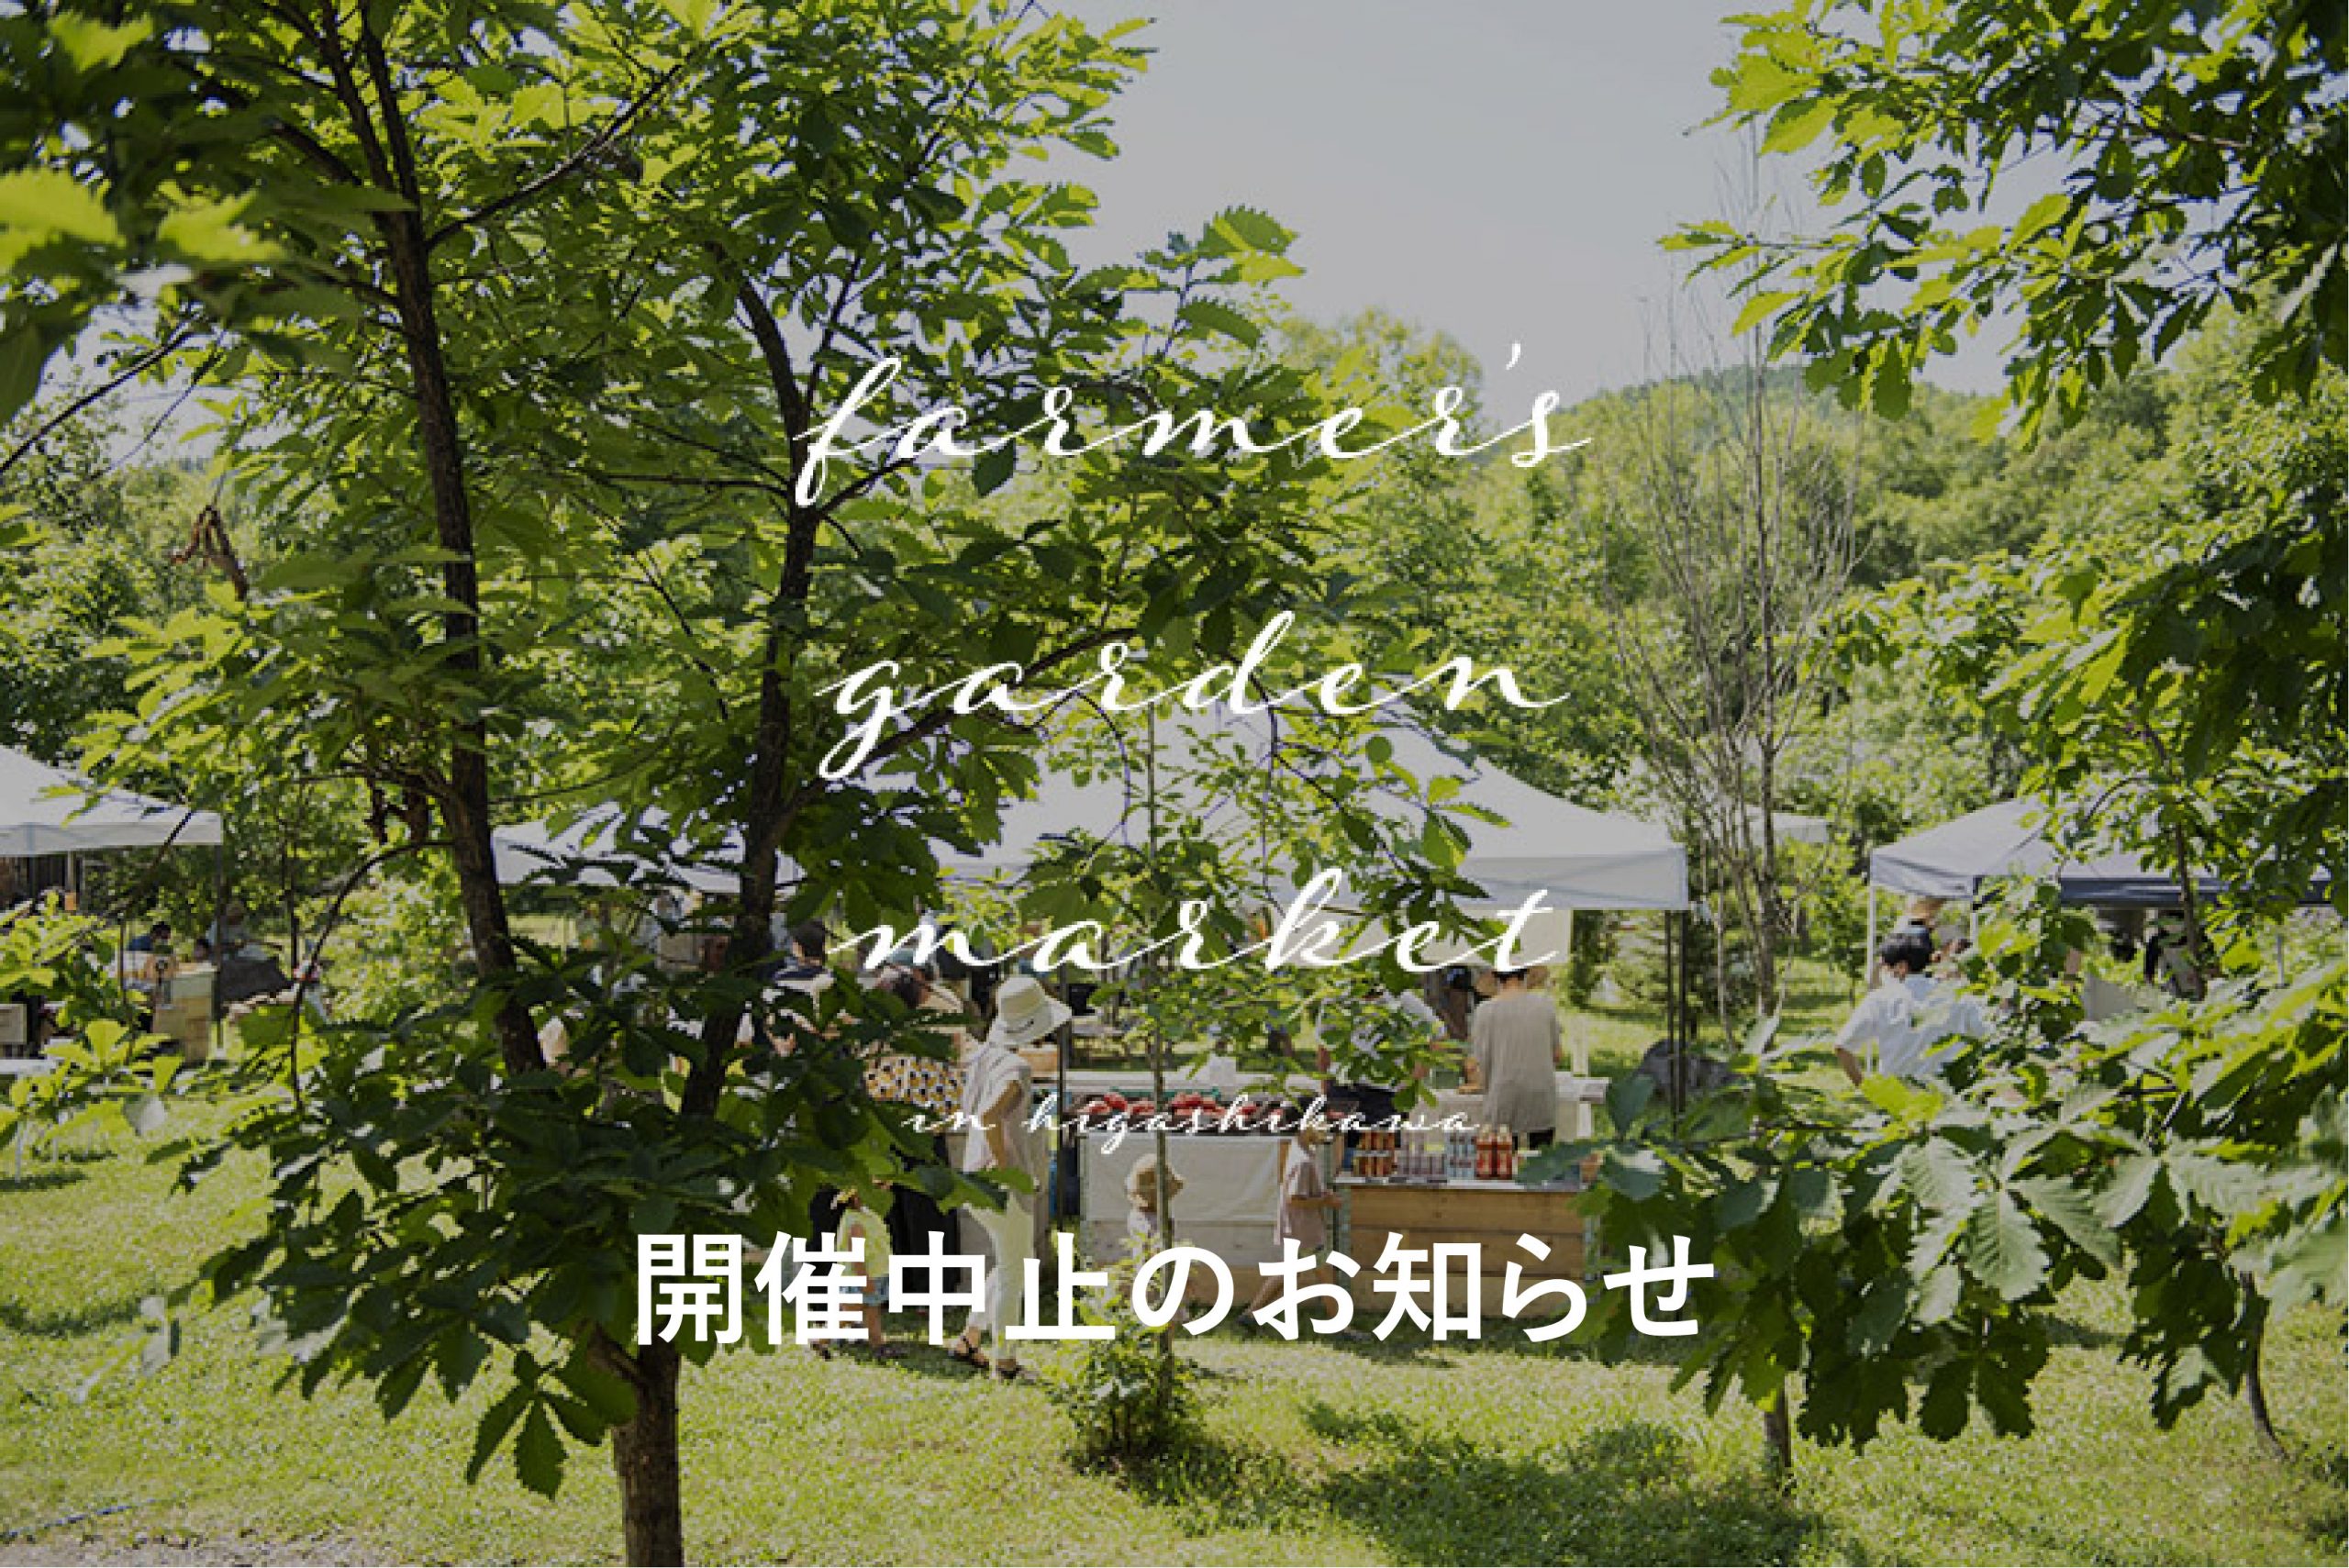 7 月Farmer’s Garden Market in Higashikawa 【開催中止】のお知らせ